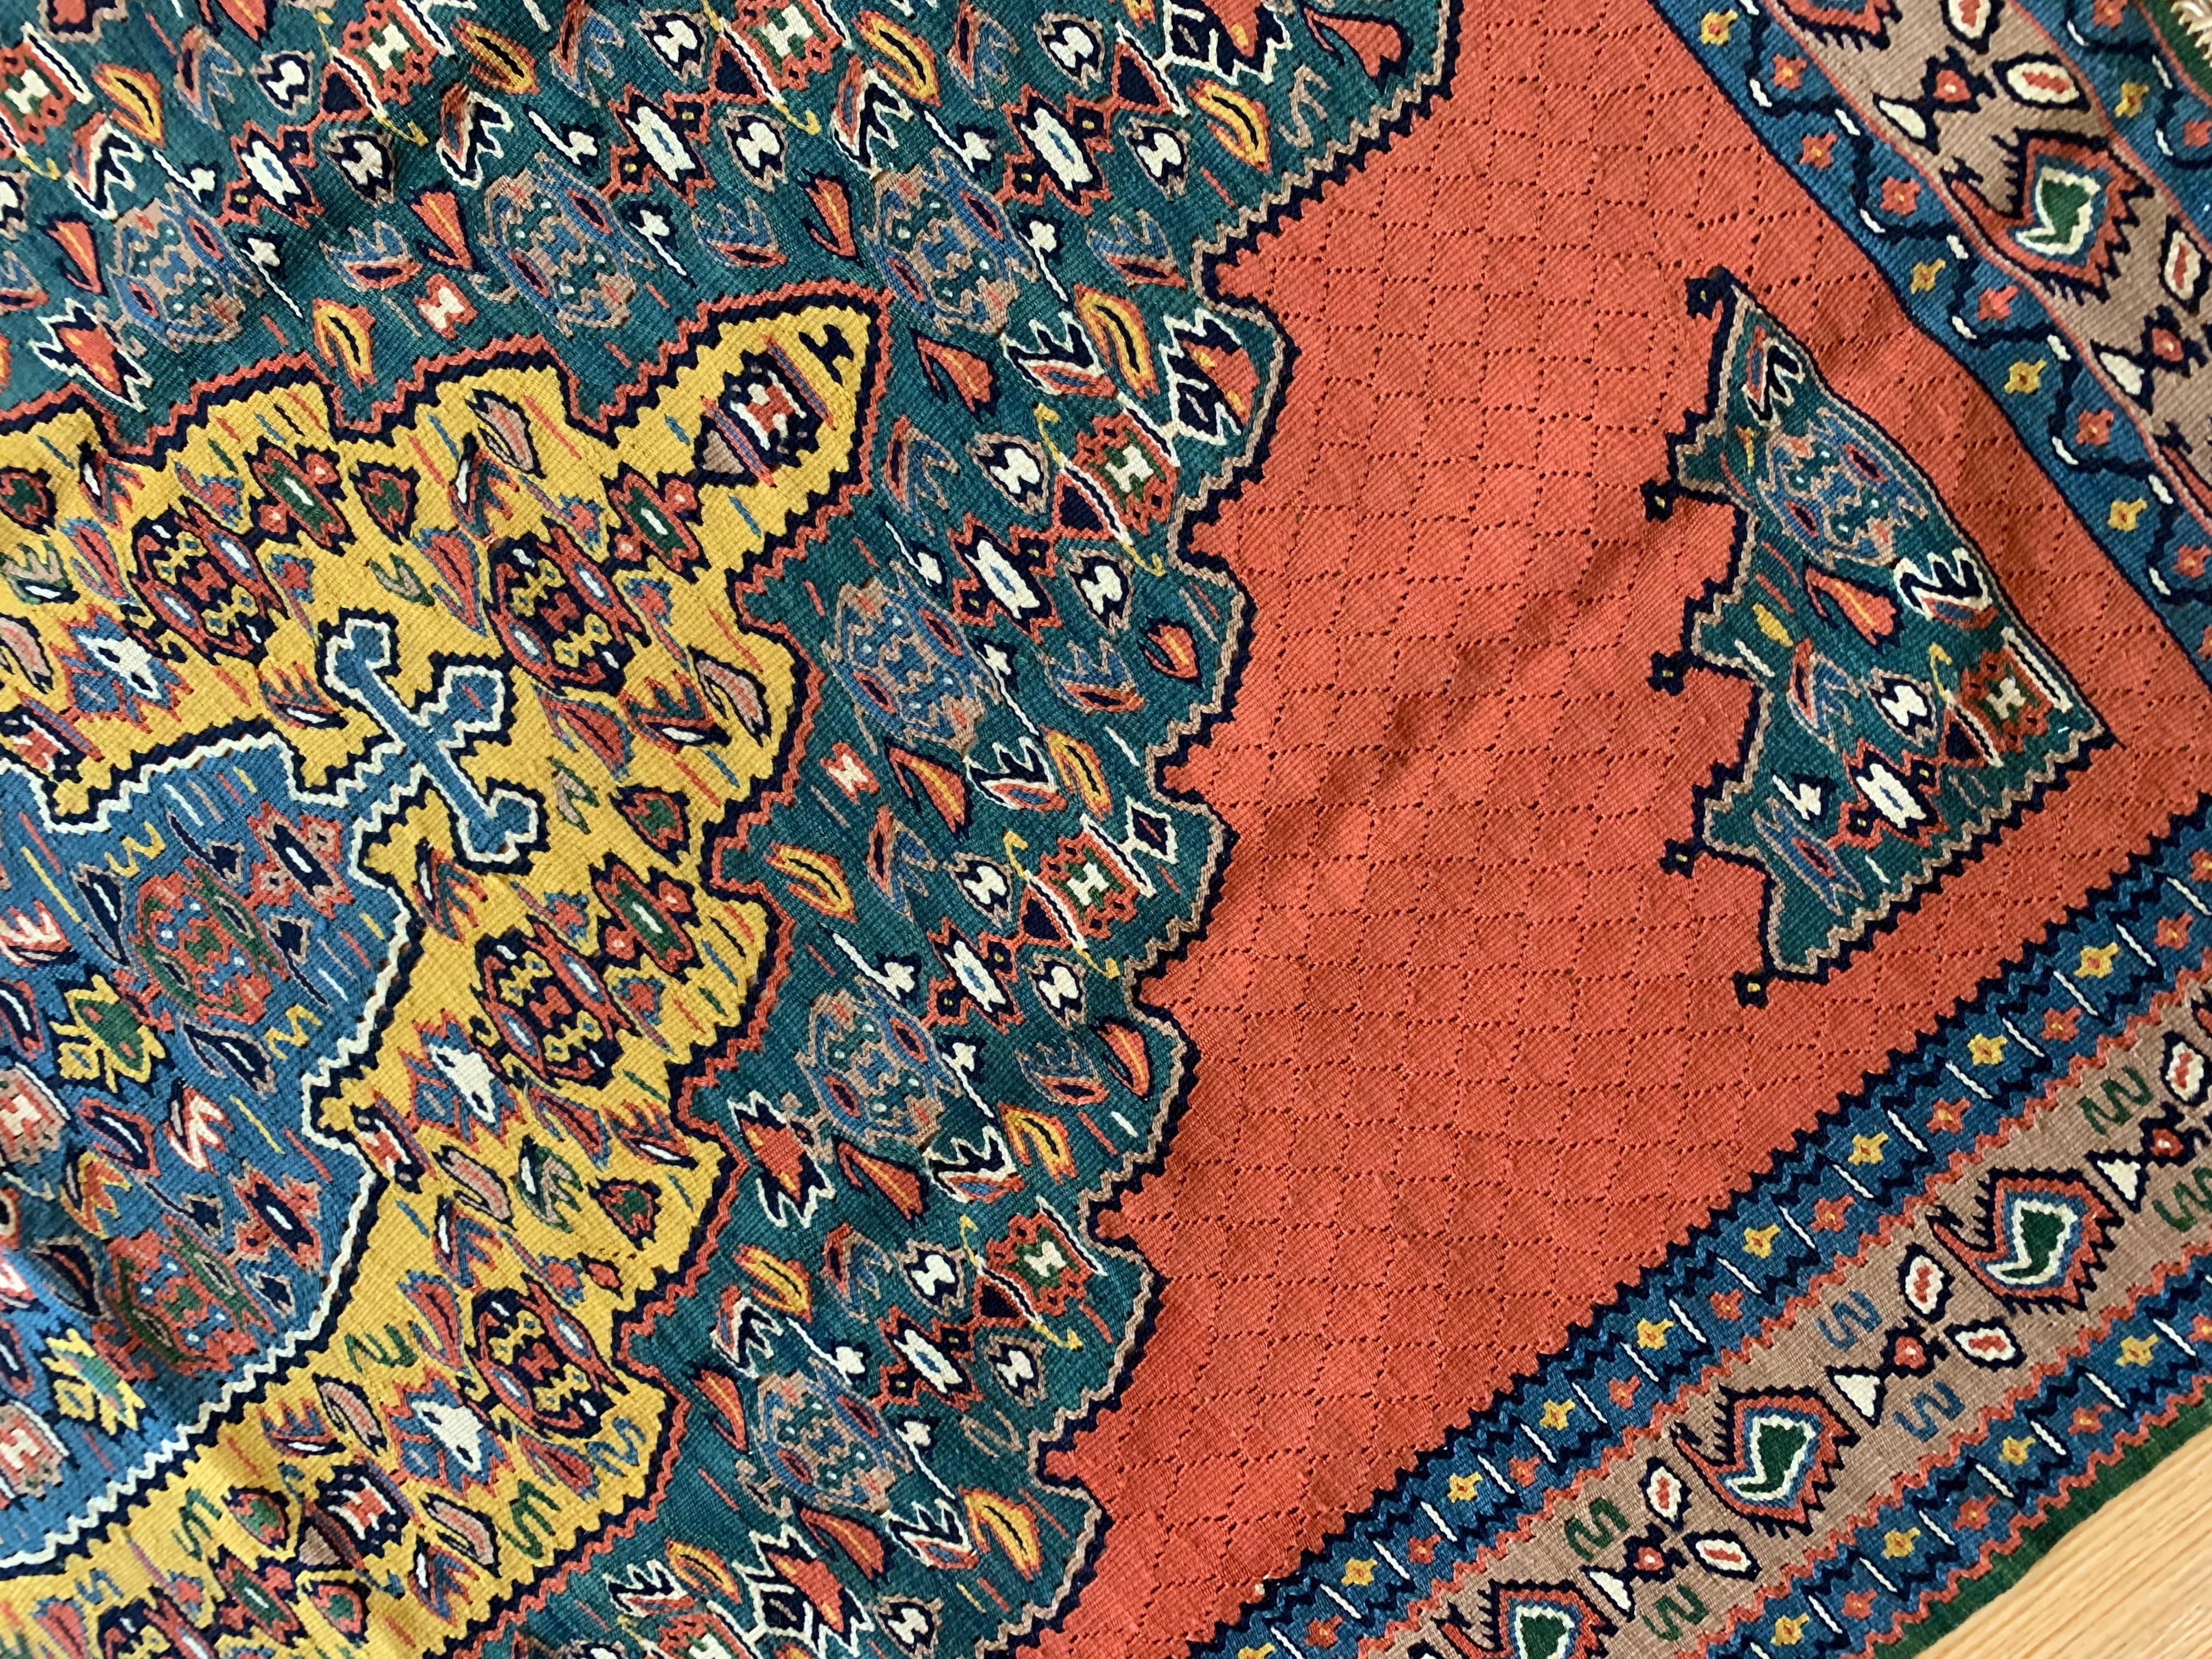 Diese eleganten flachgewebten Teppiche sind wunderschöne handgefertigte Kelimteppiche, die nur aus feinster Wolle und Baumwolle bestehen. Das Design besteht aus einem großen Medaillon mit gelben, blauen und rostroten Akzenten, die in geometrischen